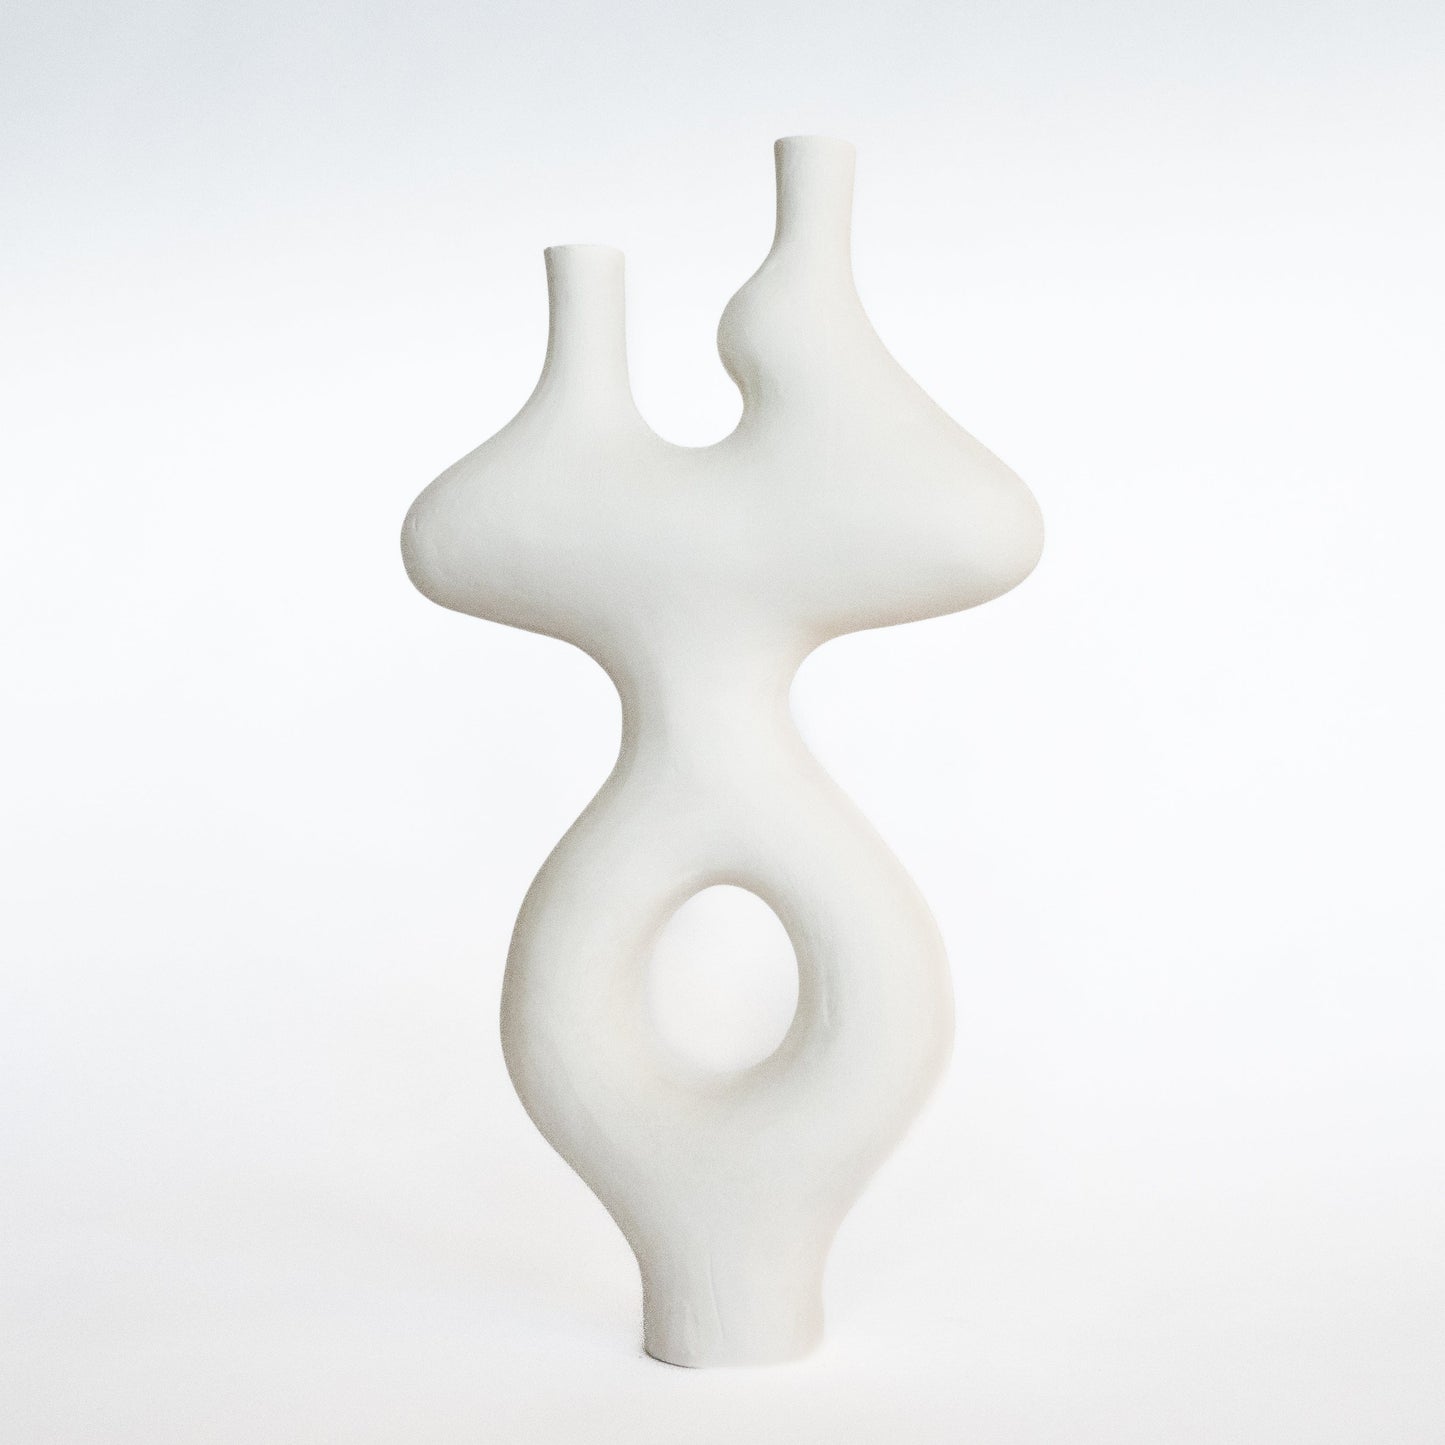 Form Vase #44 by Whitney Bender